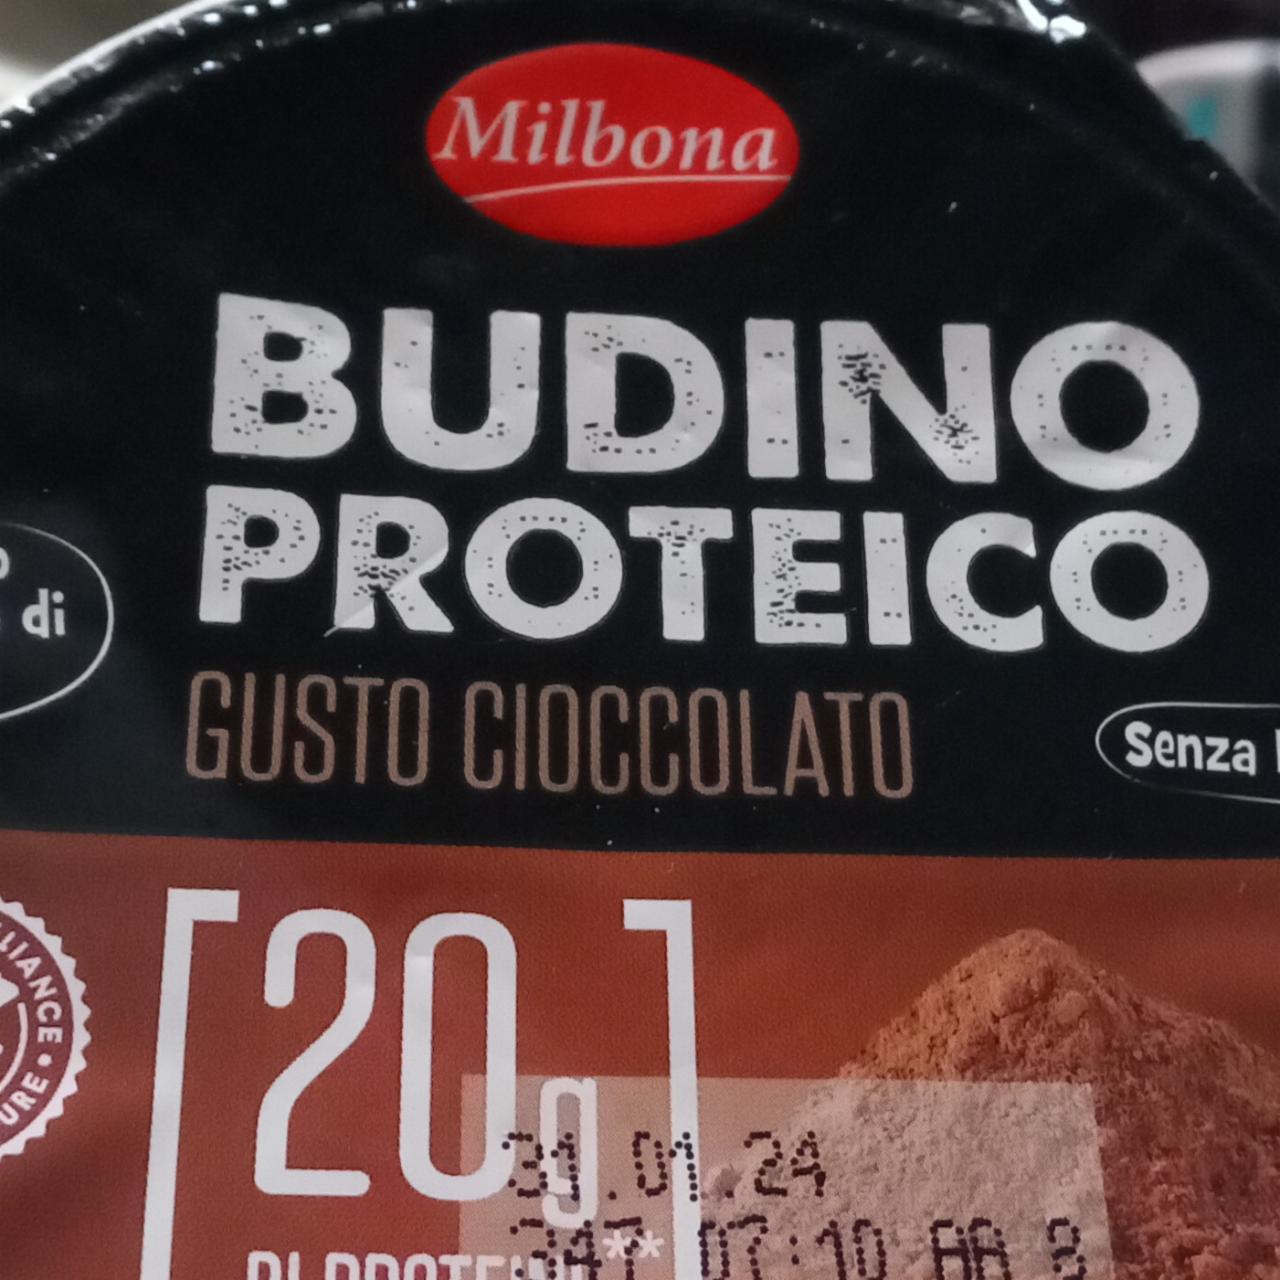 Fotografie - Budino proteico gusto cioccolato Milbona